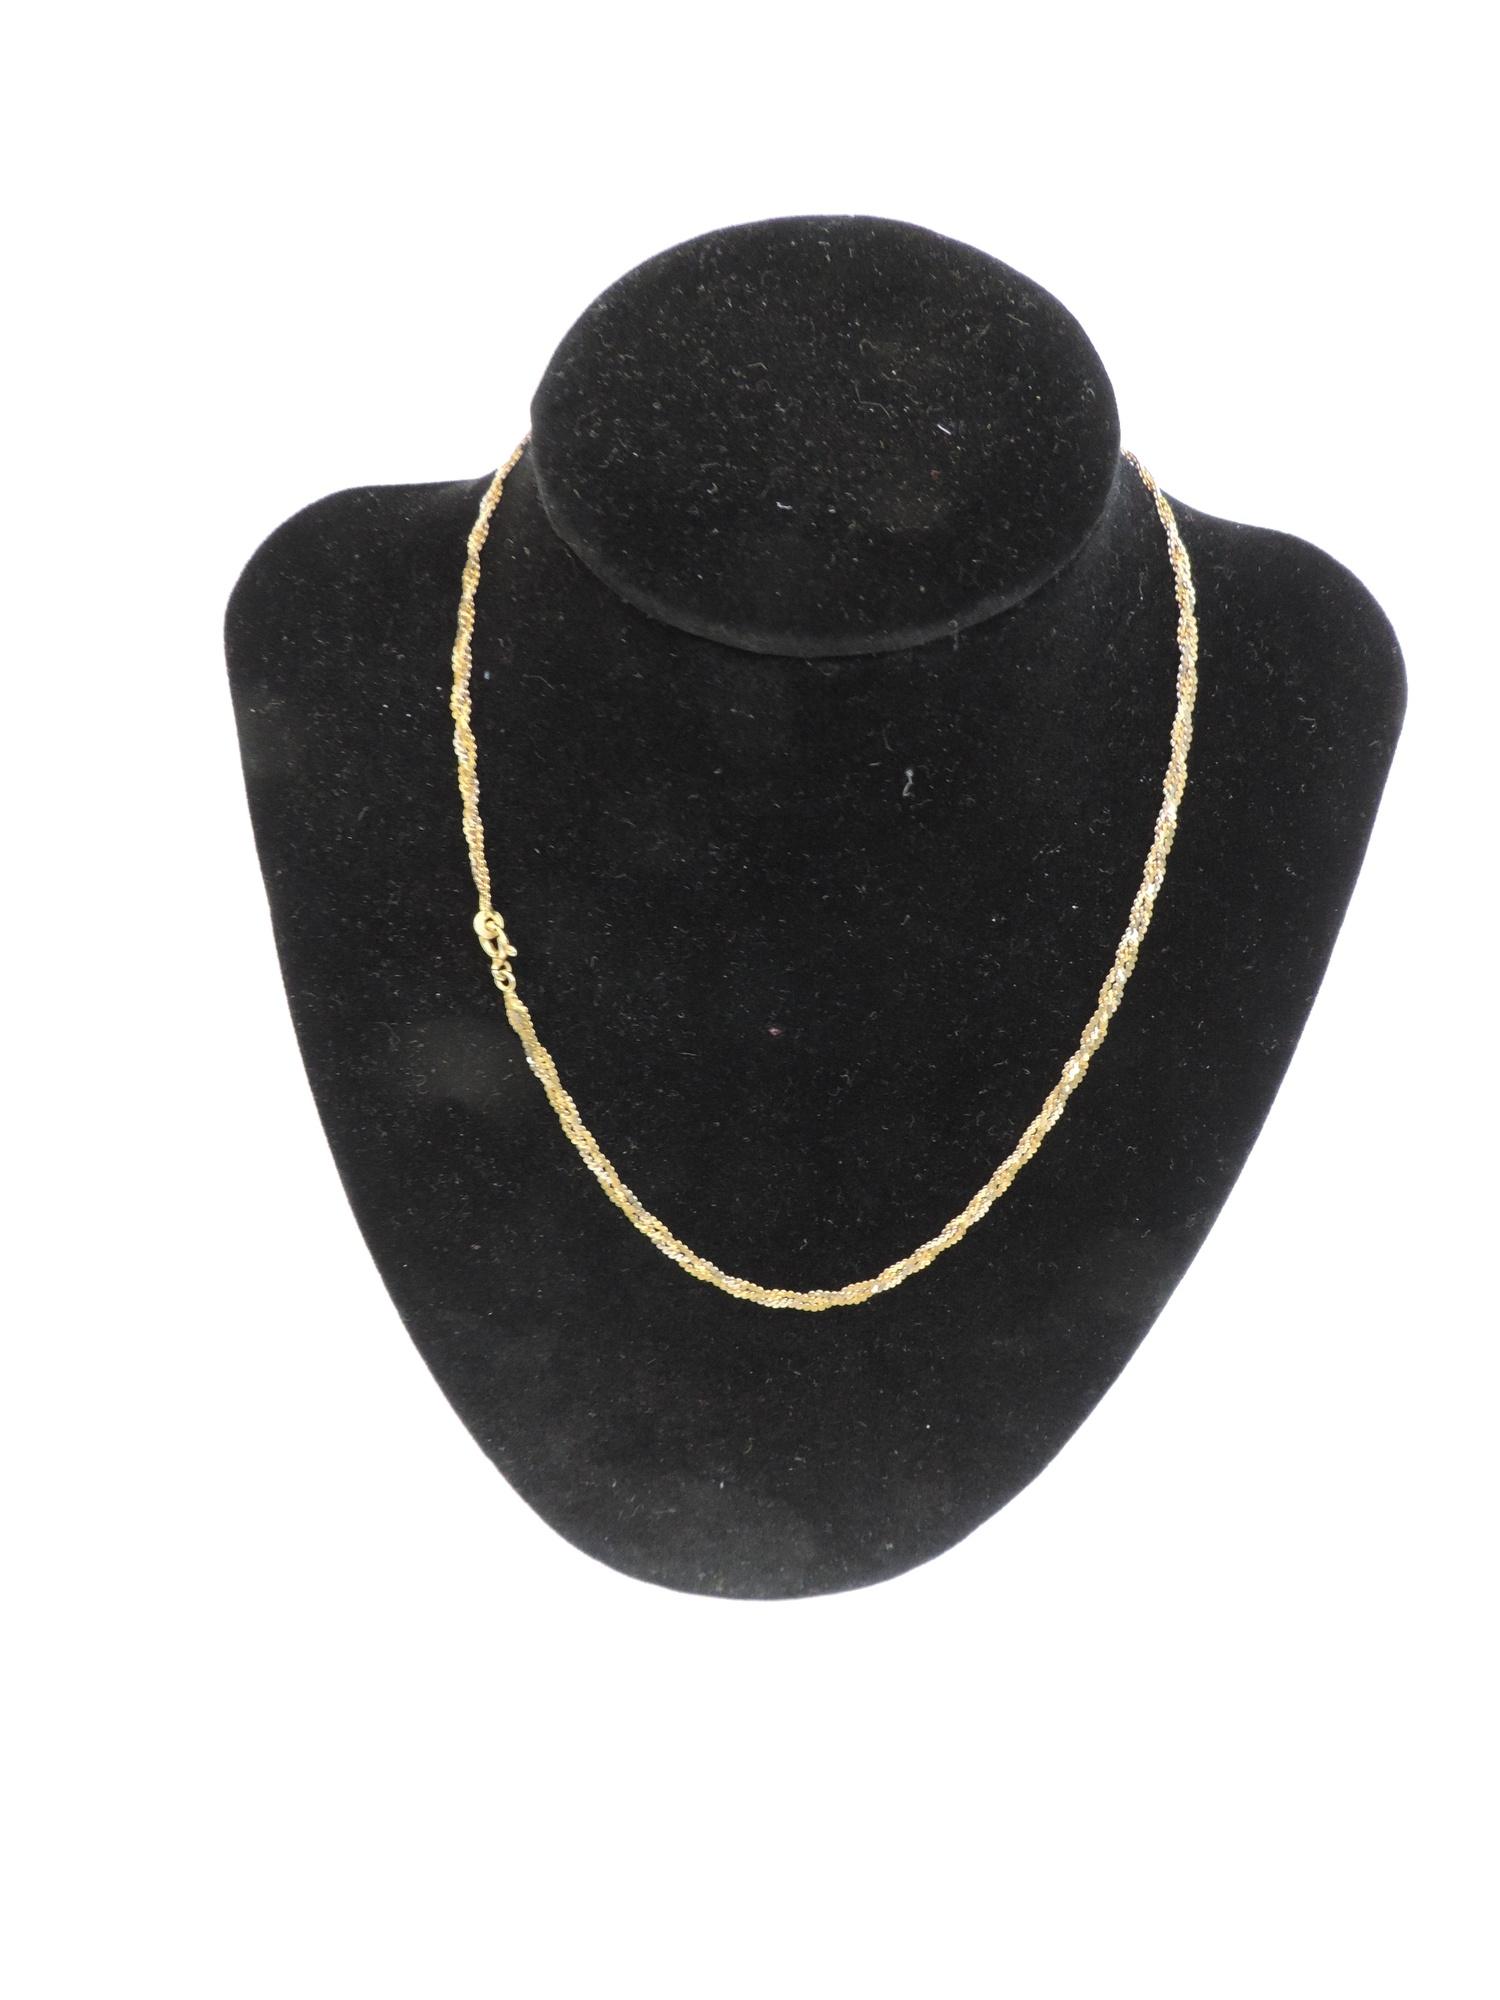 18ct Gold Necklace - 40cm Long - 7gms